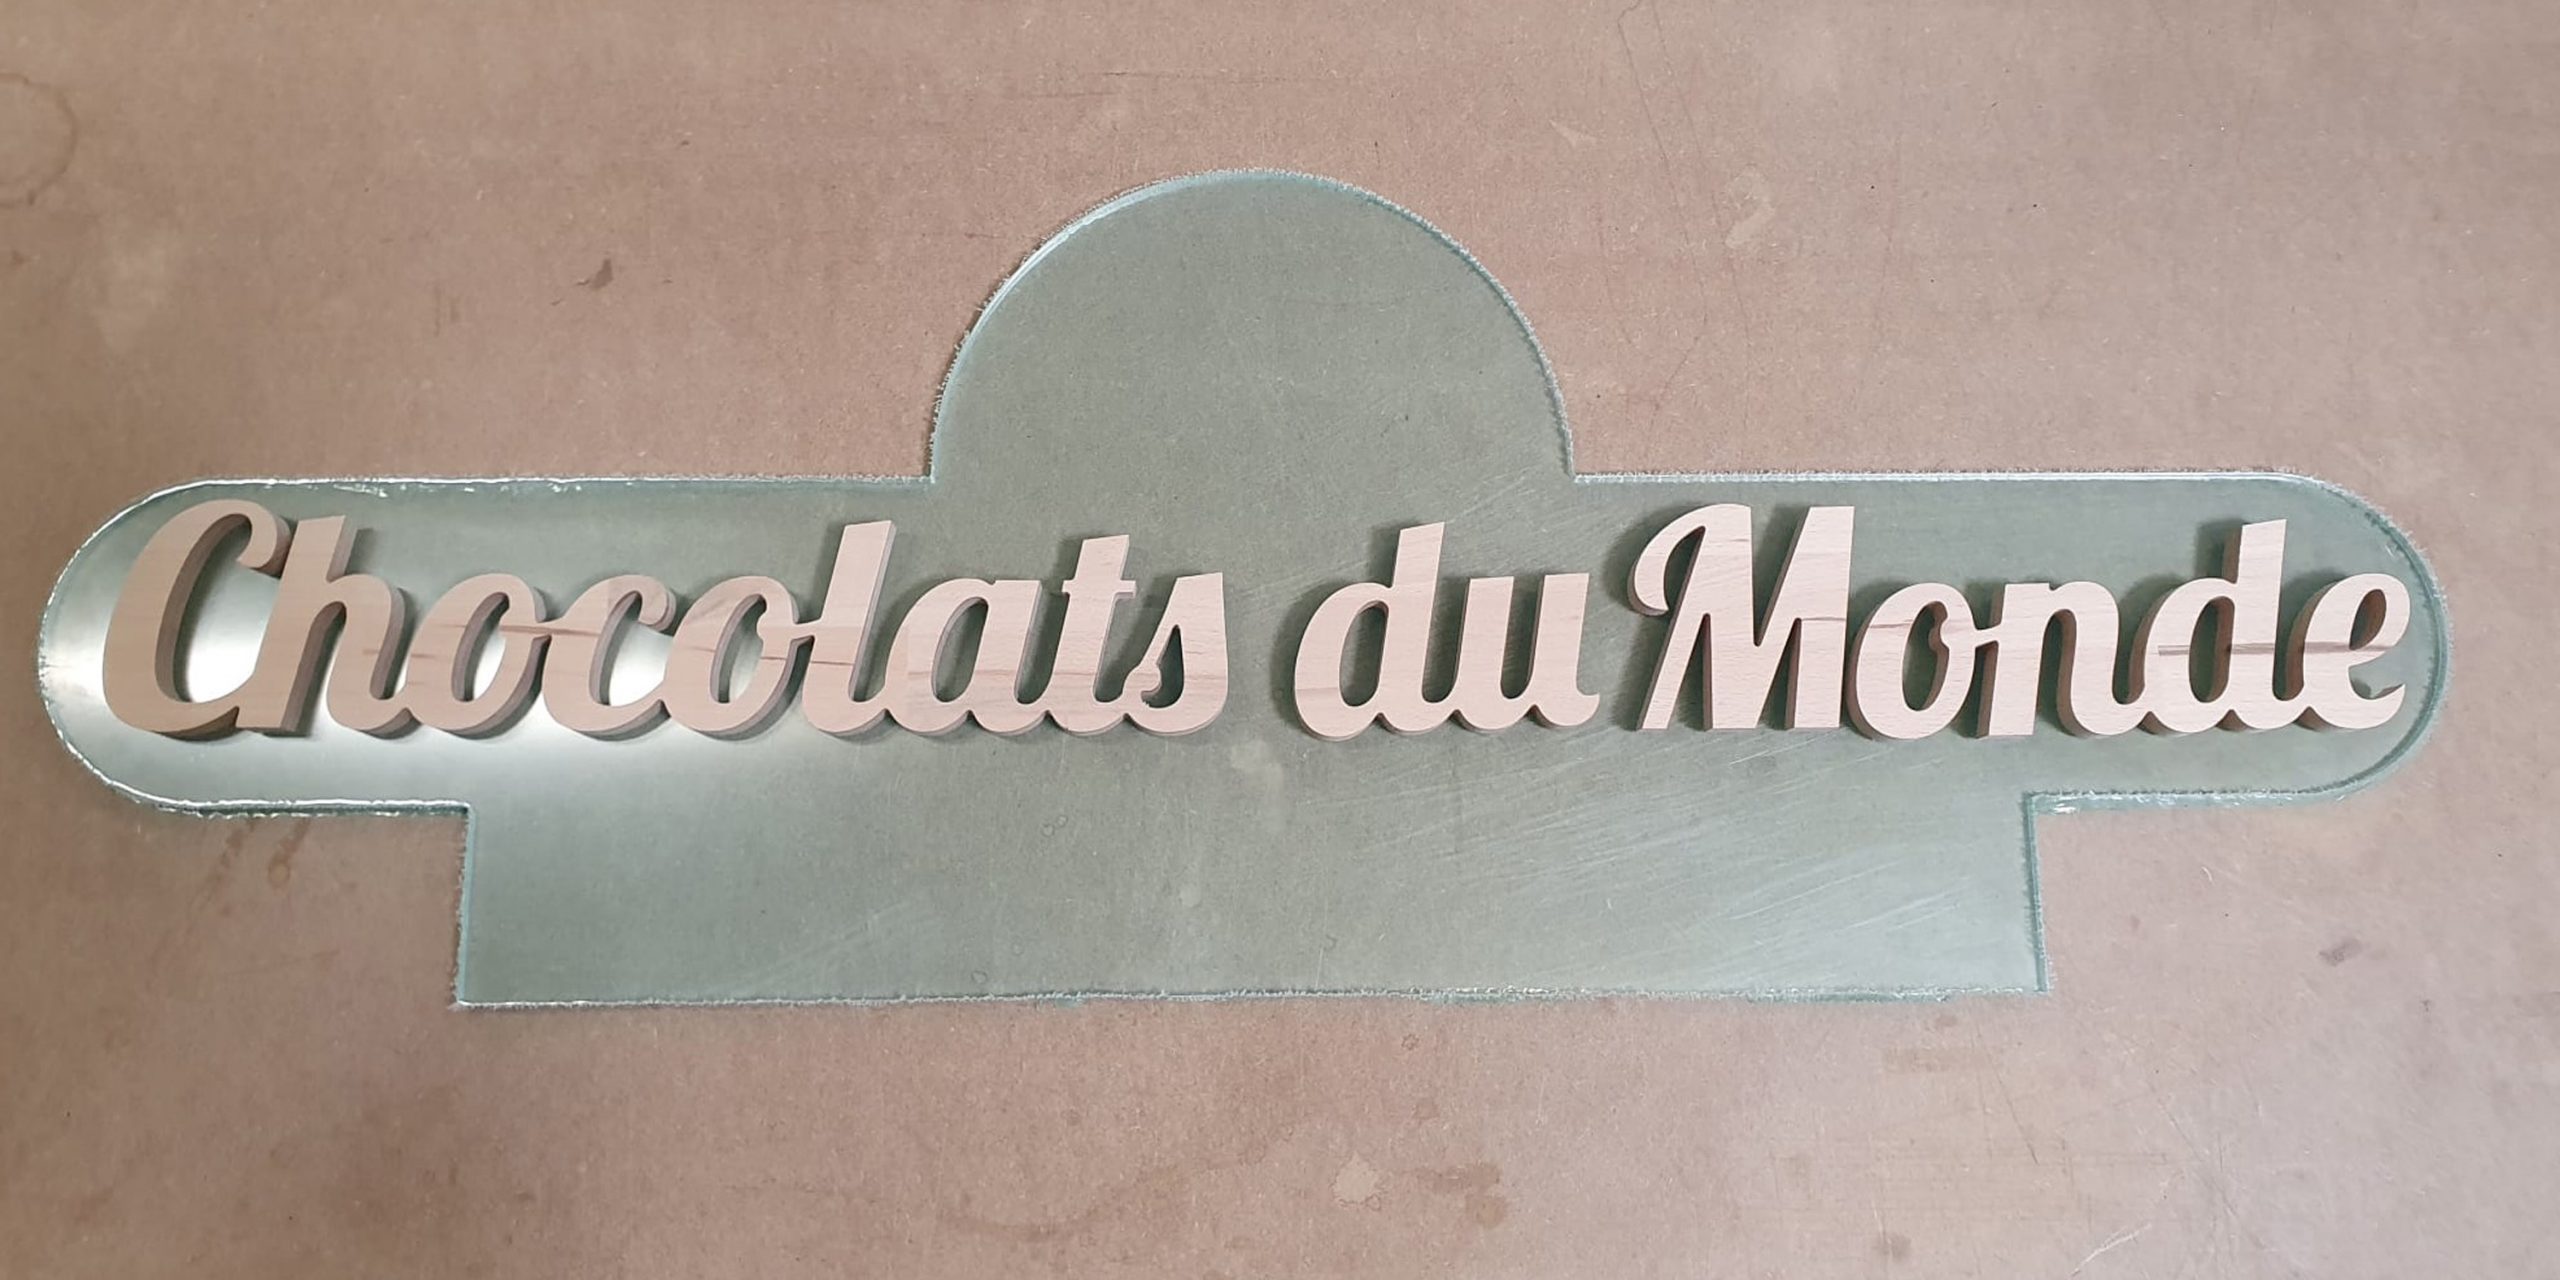 Signalétique Chocolat du Monde avec support en plexiglas incolore et lettrage en bois hêtre par Atelier du plastique à Verson  du plastique à Verson près de Caen dans le Calvados